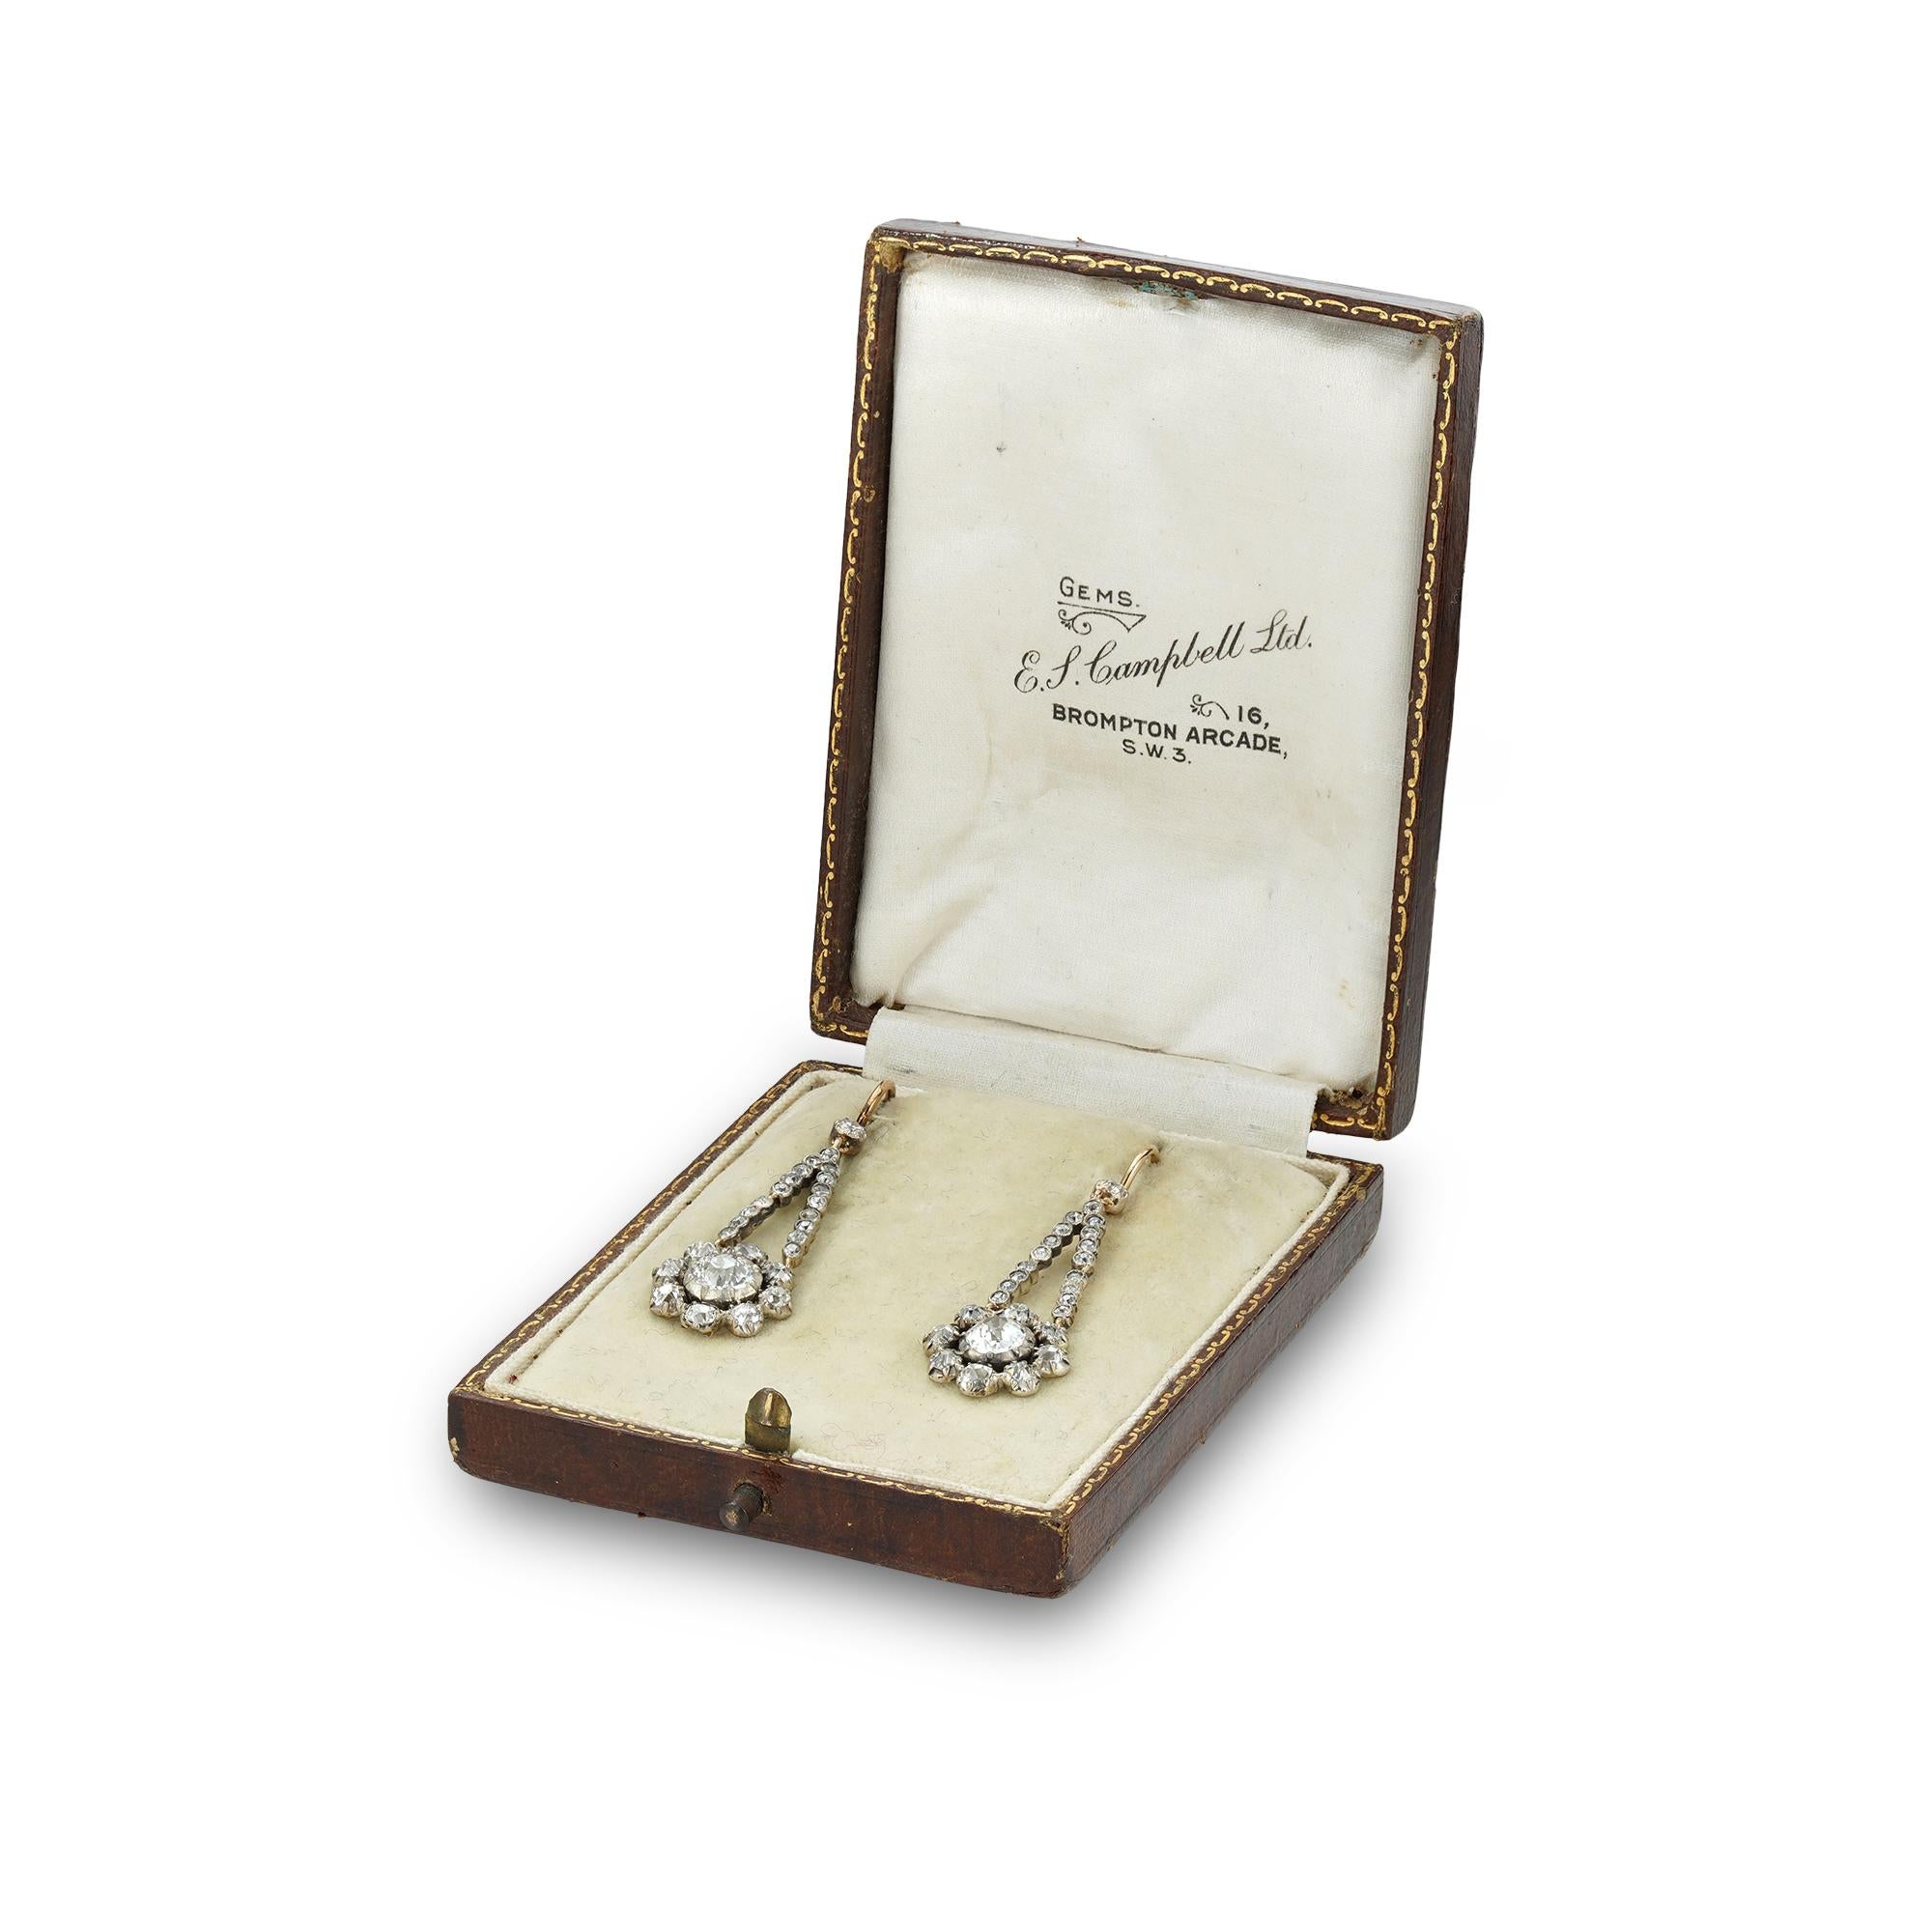 Ein Paar georgianische Diamant-Anhänger-Ohrringe, jeweils mit einem zentralen Altschliff-Diamanten mit einem Gewicht von ca. 0,7 Karat, umgeben von einem Altschliff-Diamanten-Cluster, wobei jedes Cluster an einer flexiblen Reihe kleinerer